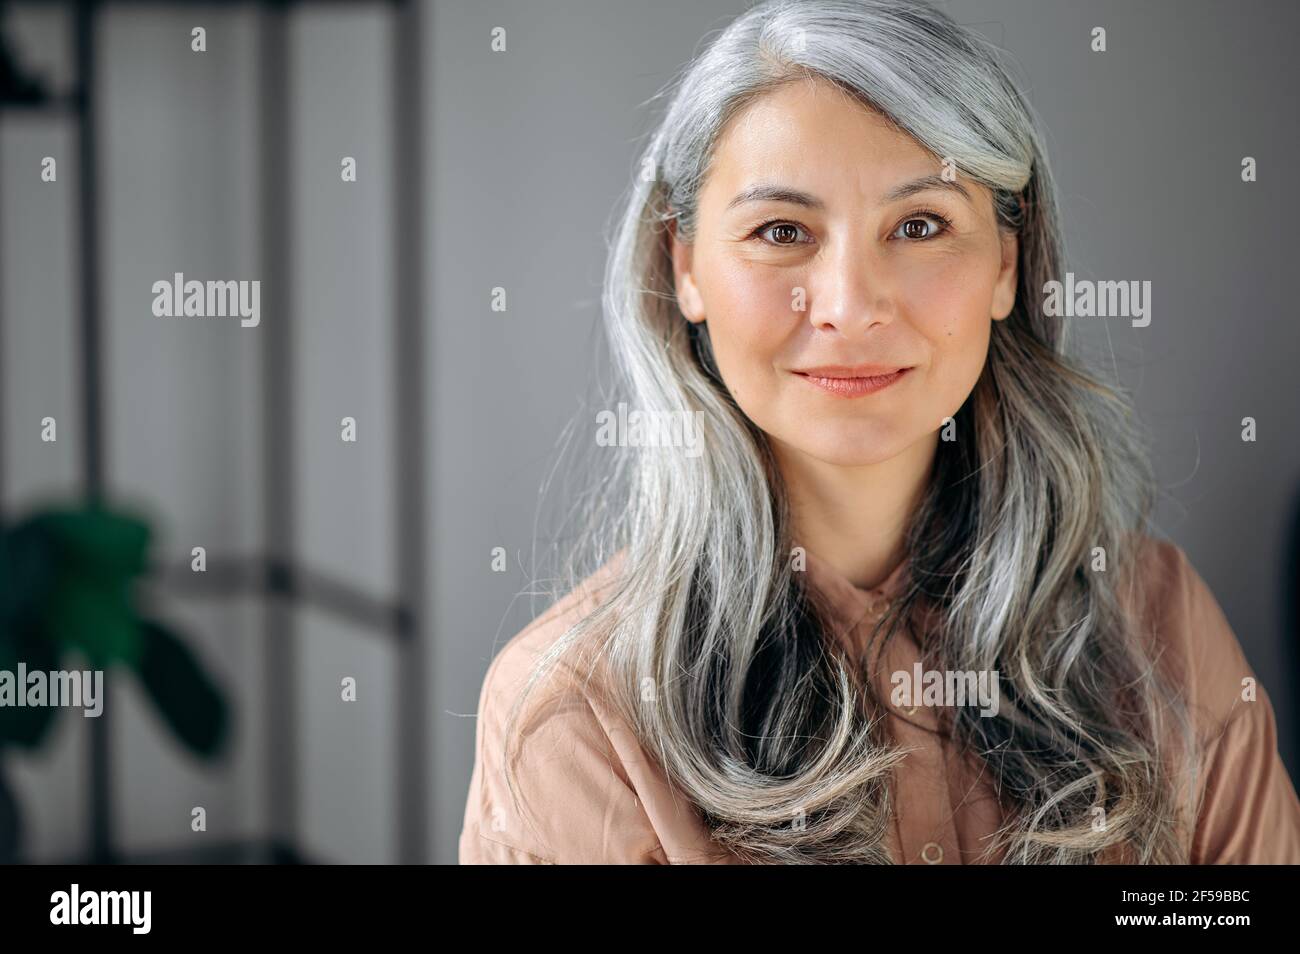 Nahaufnahme Porträt der schönen einflussreichen selbstbewussten reifen grauhaarigen asiatischen Frau ceo, Anwalt, Immobilienmakler, steht im Büro, in stilvollen Kleidern gekleidet, sieht in die Kamera, freundlich lächelnd Stockfoto